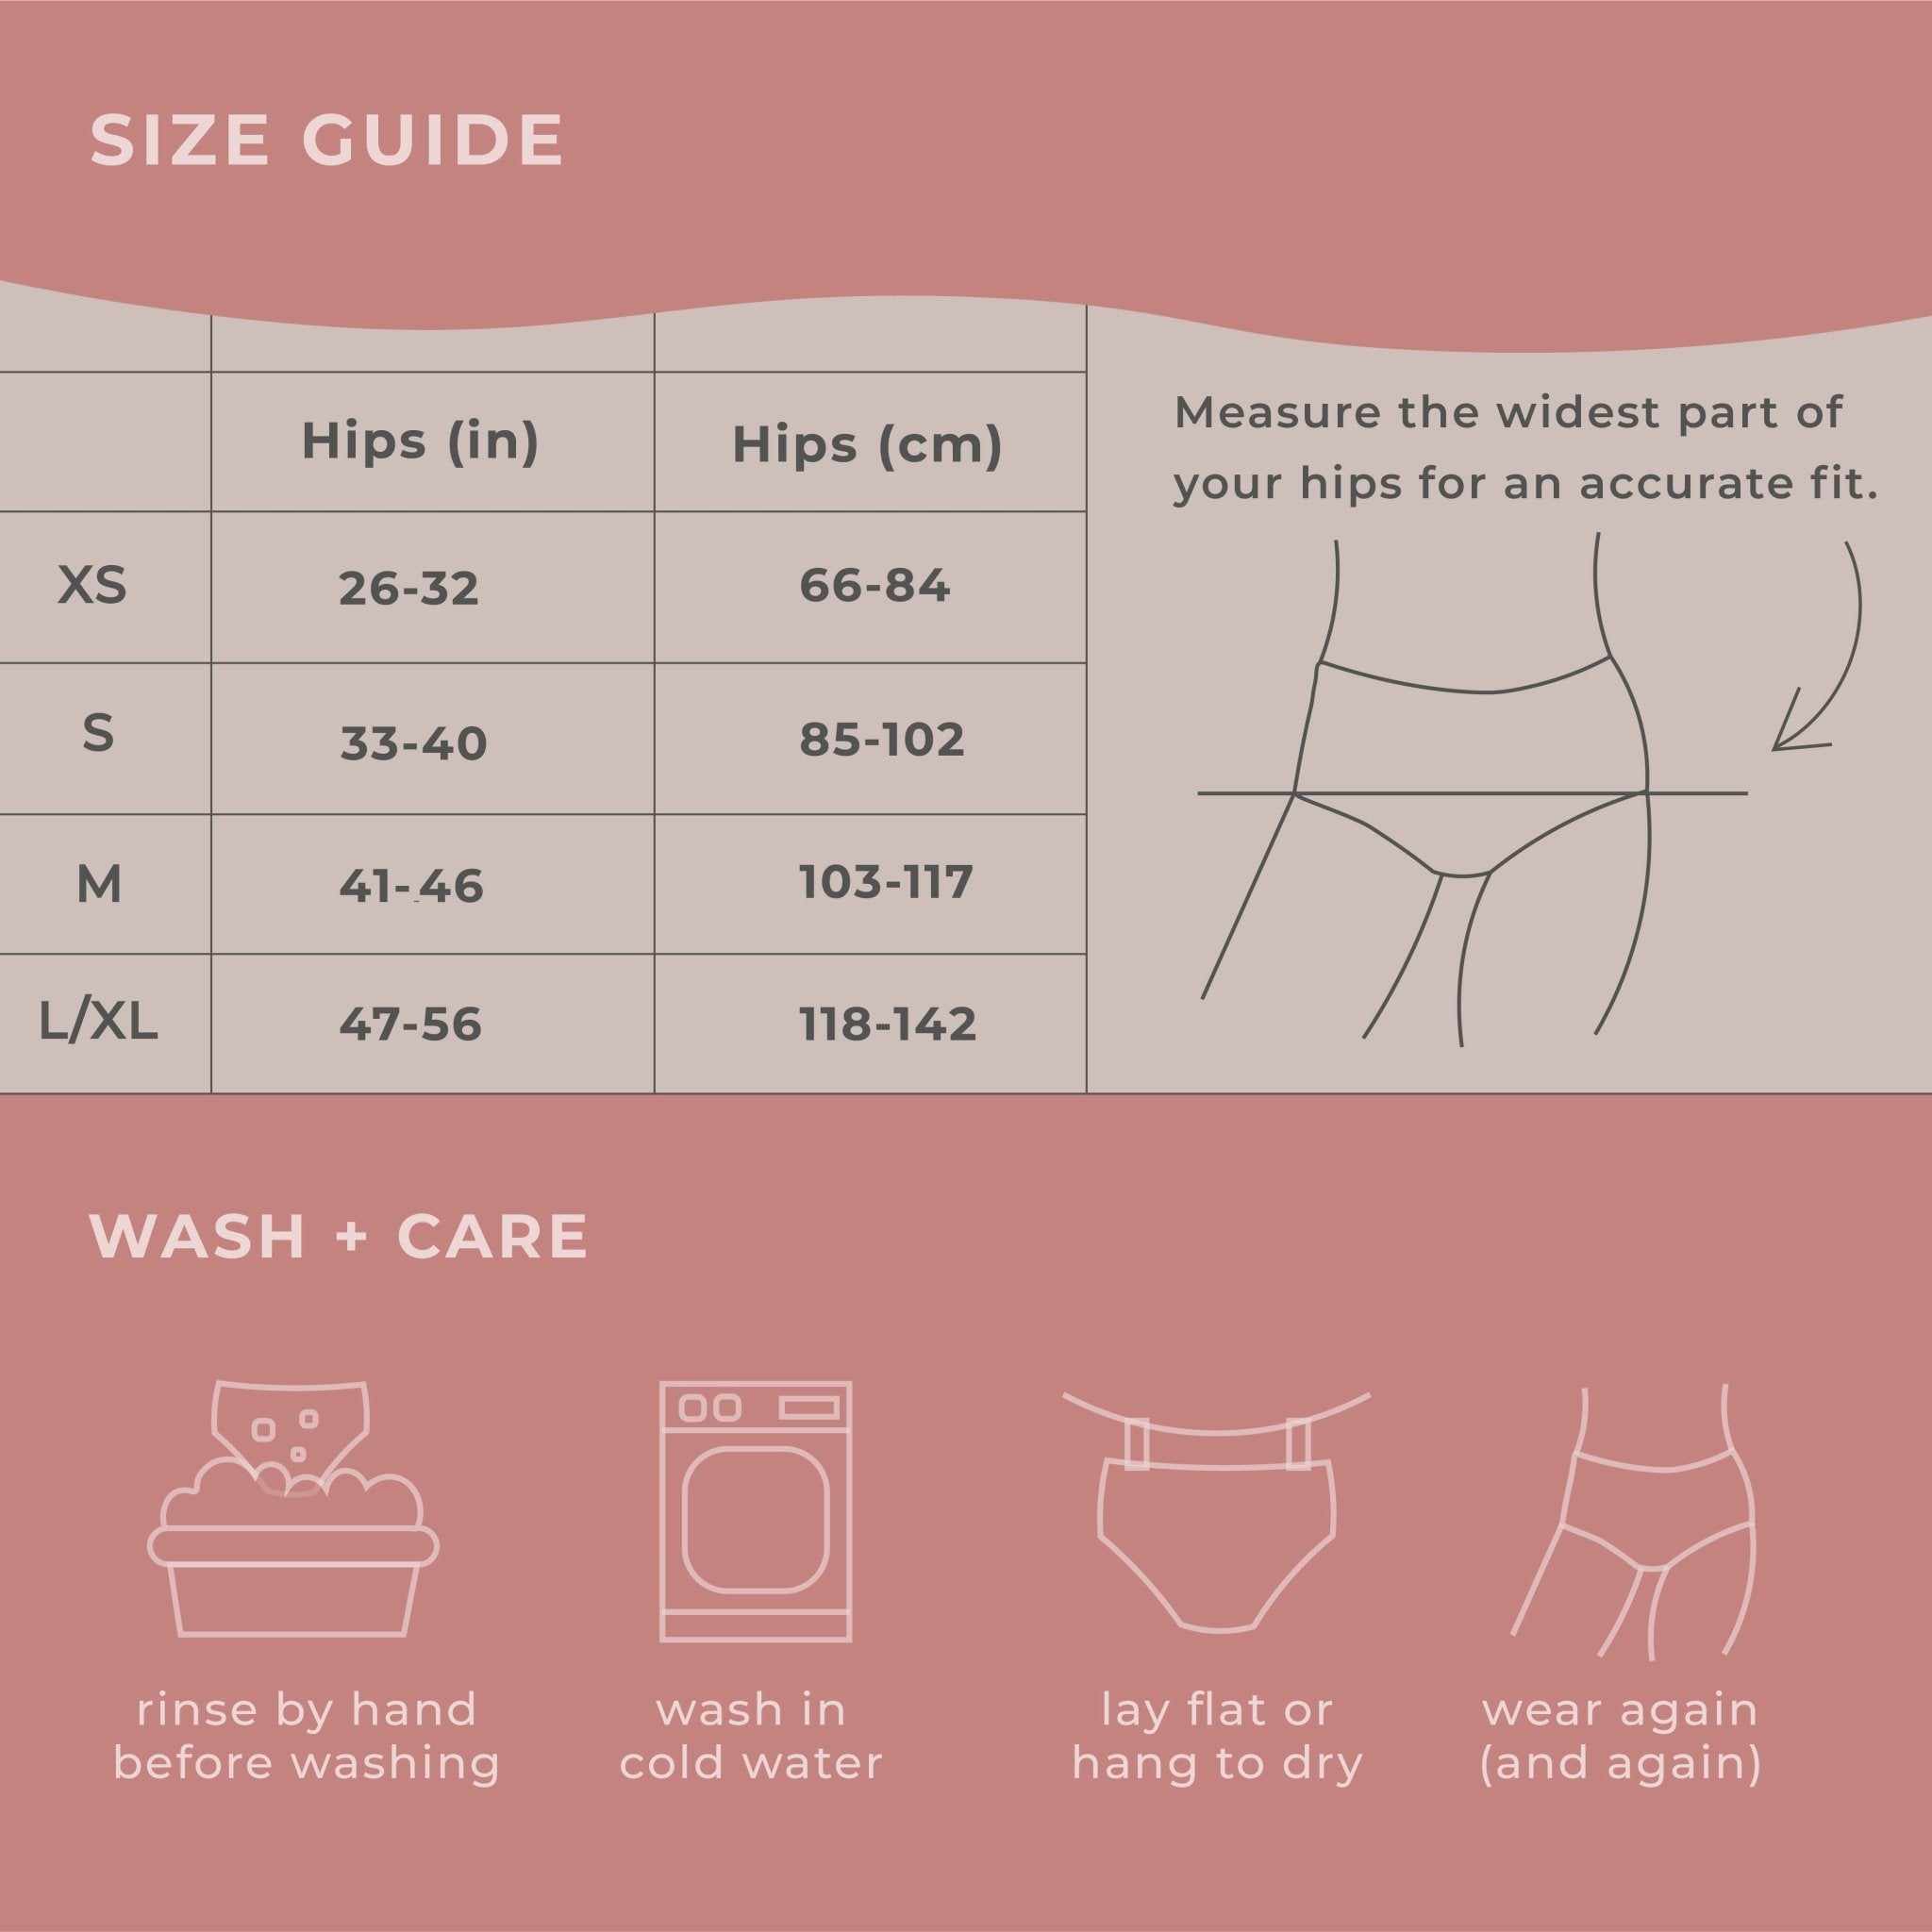 Super Comfy High-waisted Period Underwear - VOXAPOD®